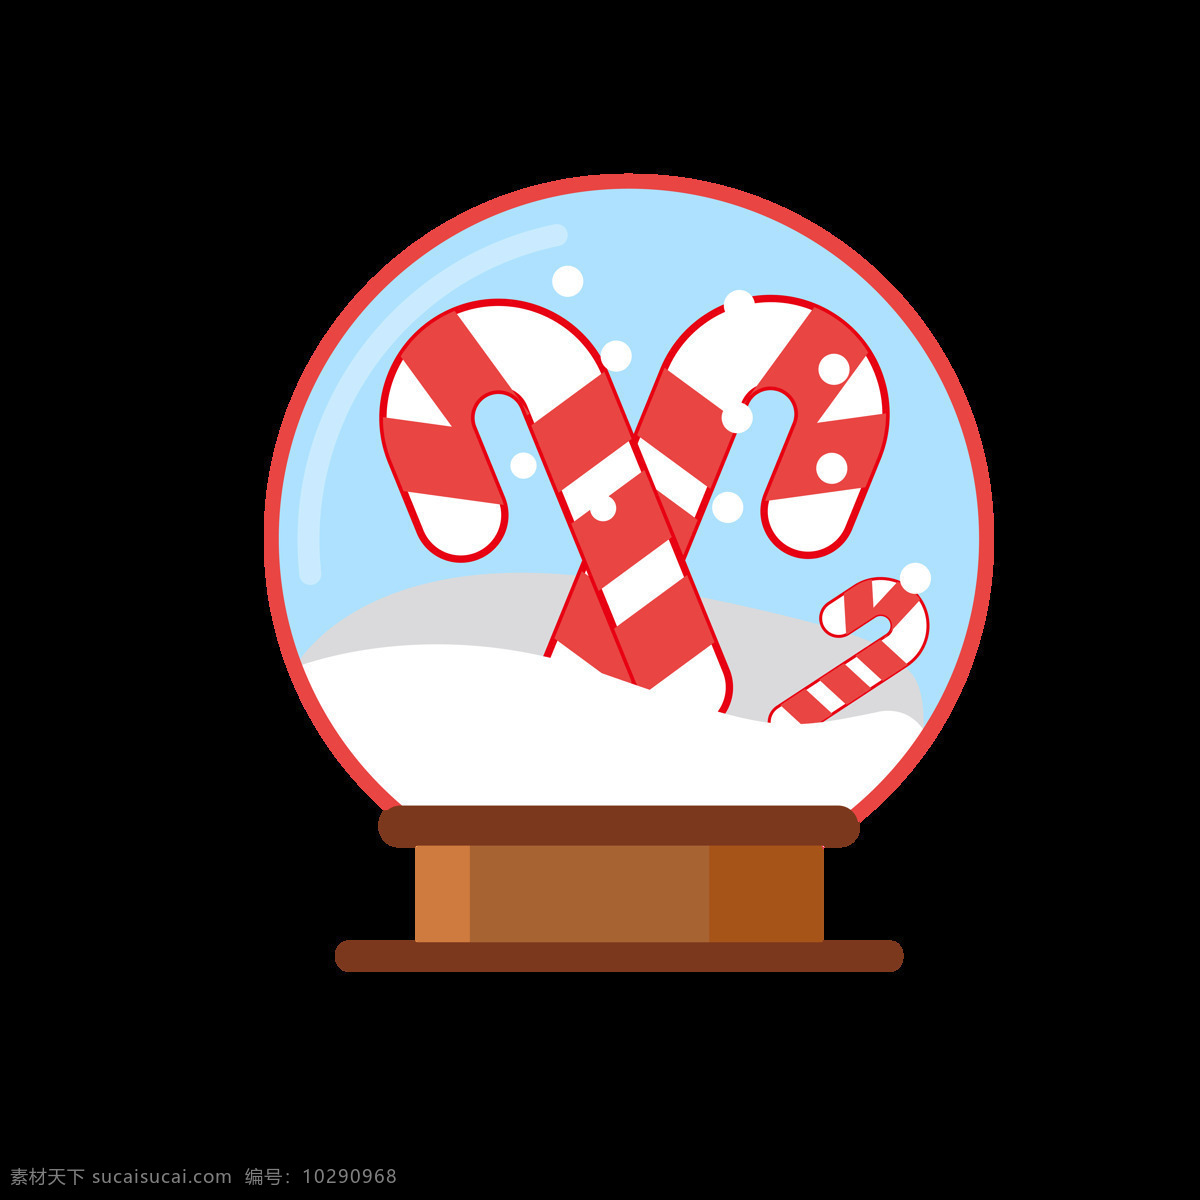 圣诞 图标 水晶球 圣诞树 花环 礼物 矢量 商用 圣诞节日 水晶 糖果